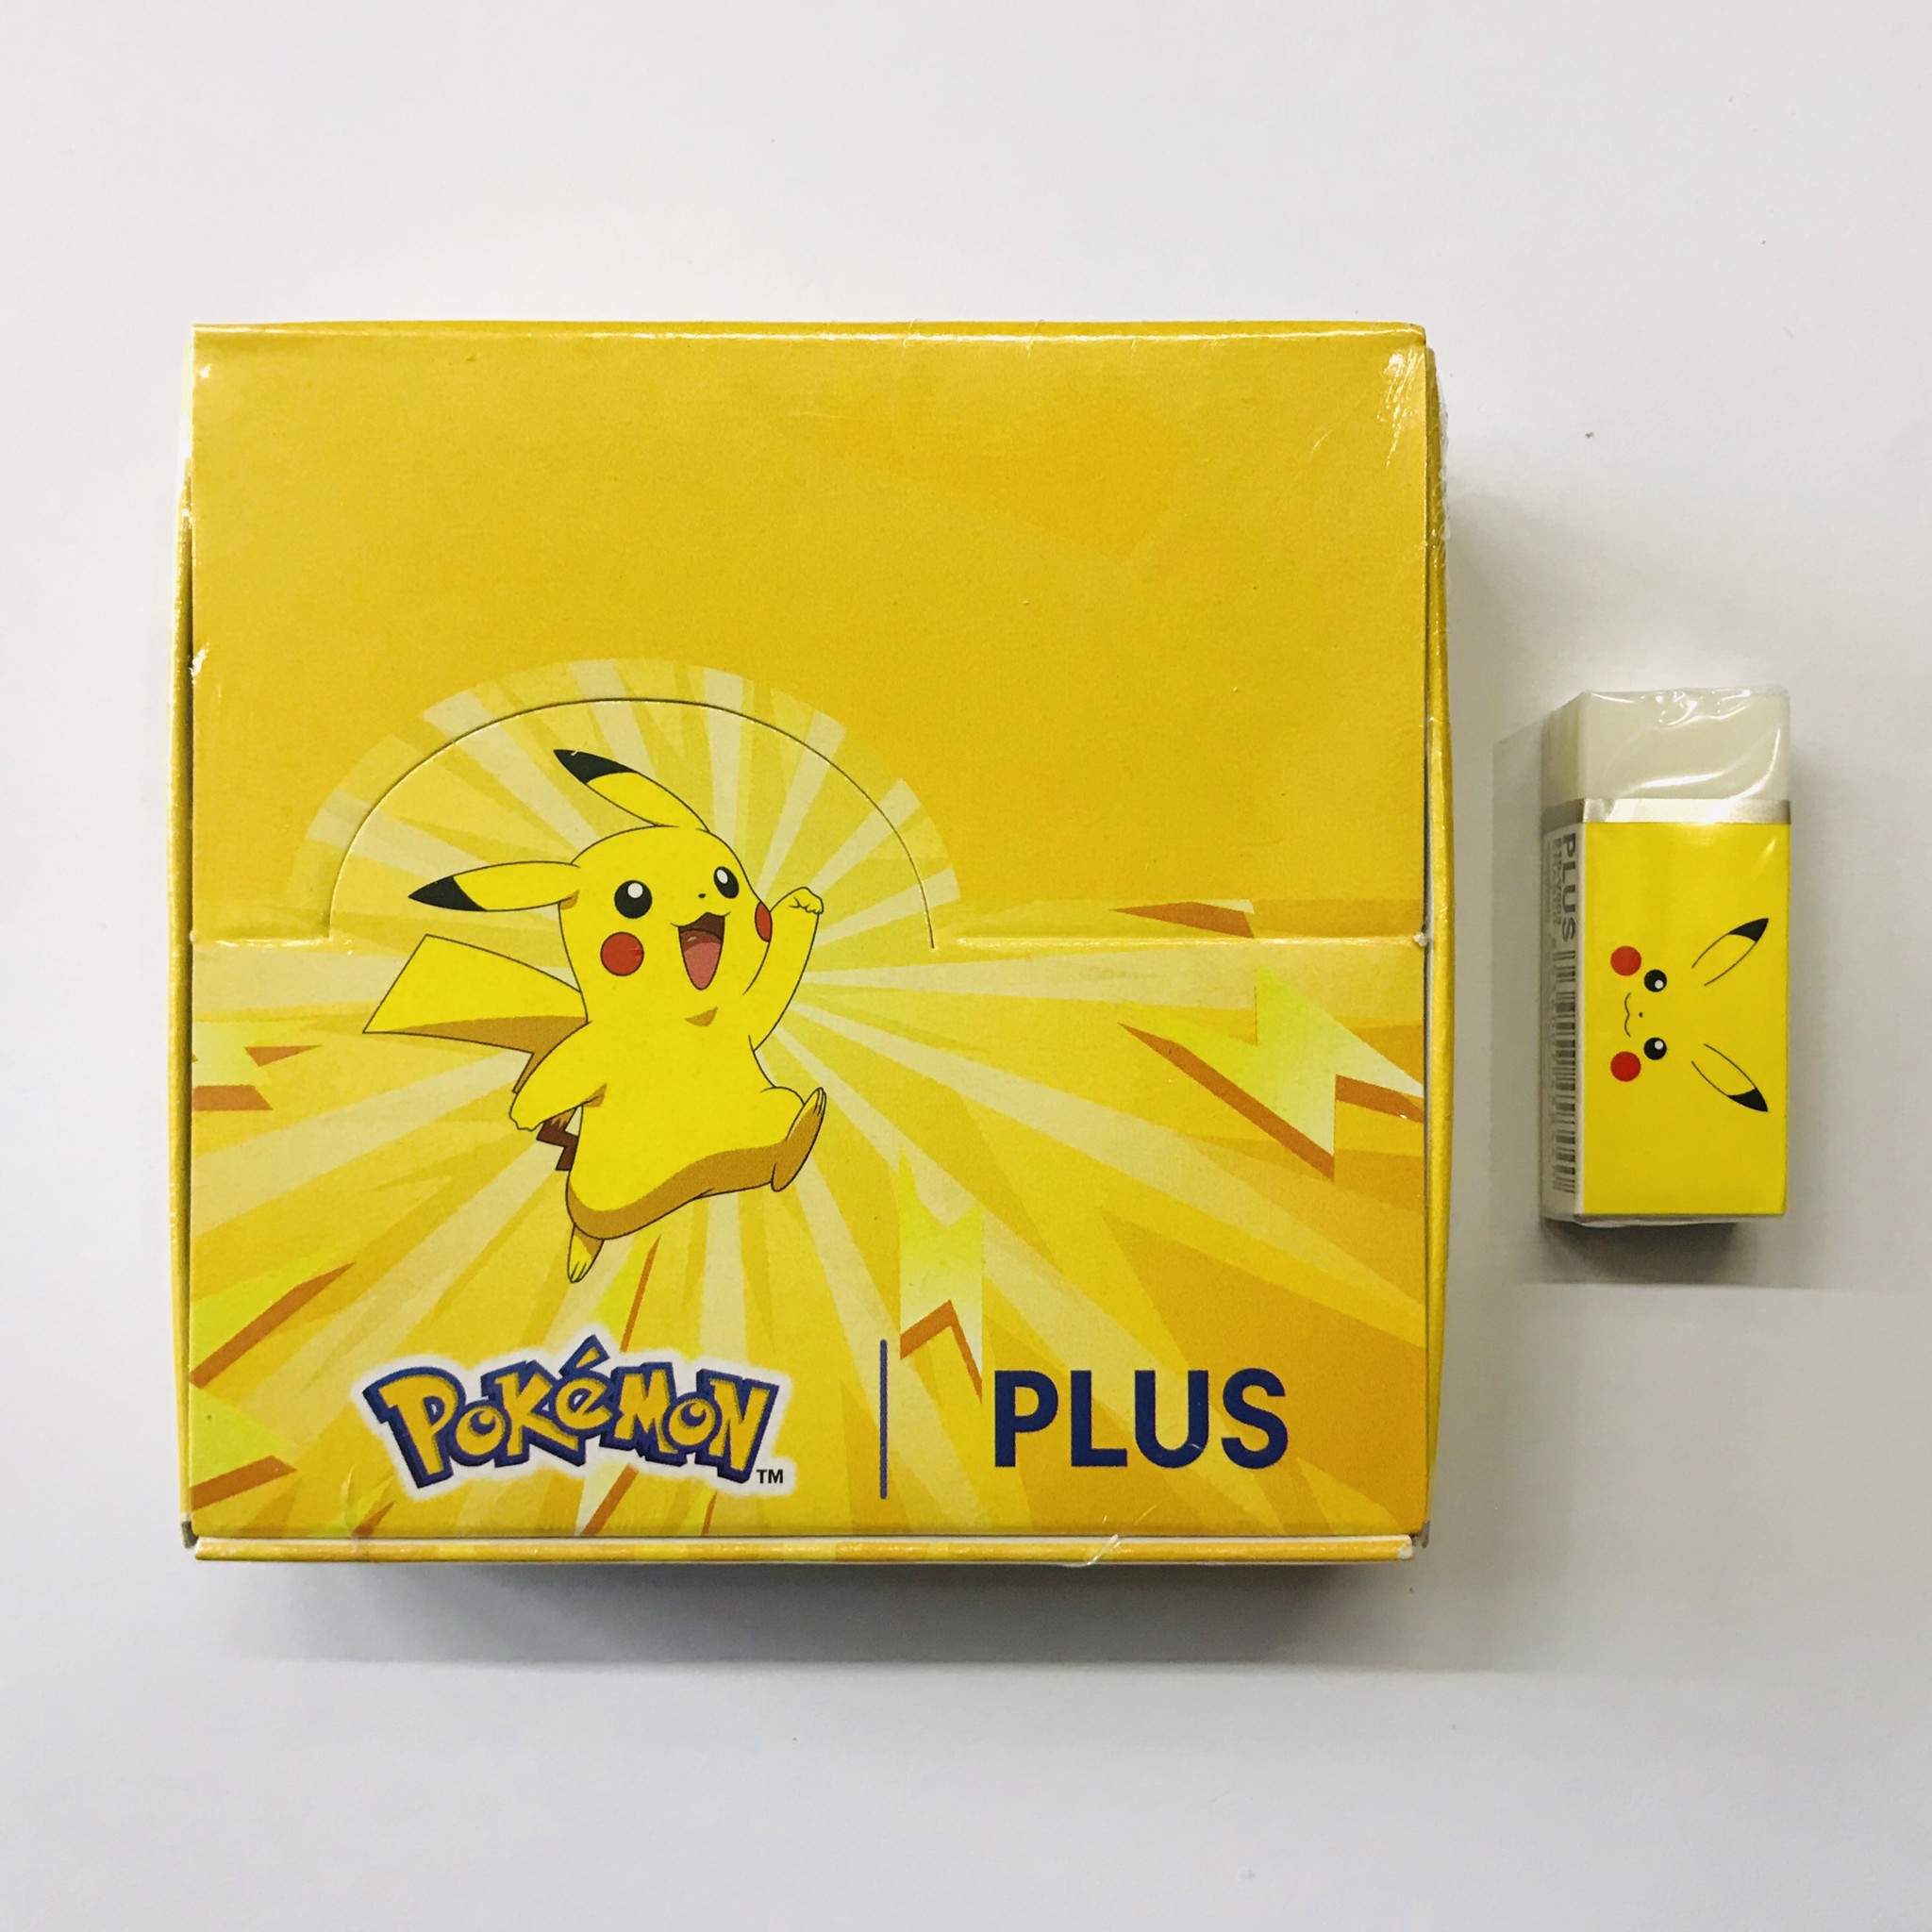 Tẩy chì Plus viên to Pokemon, Pikachu vàng